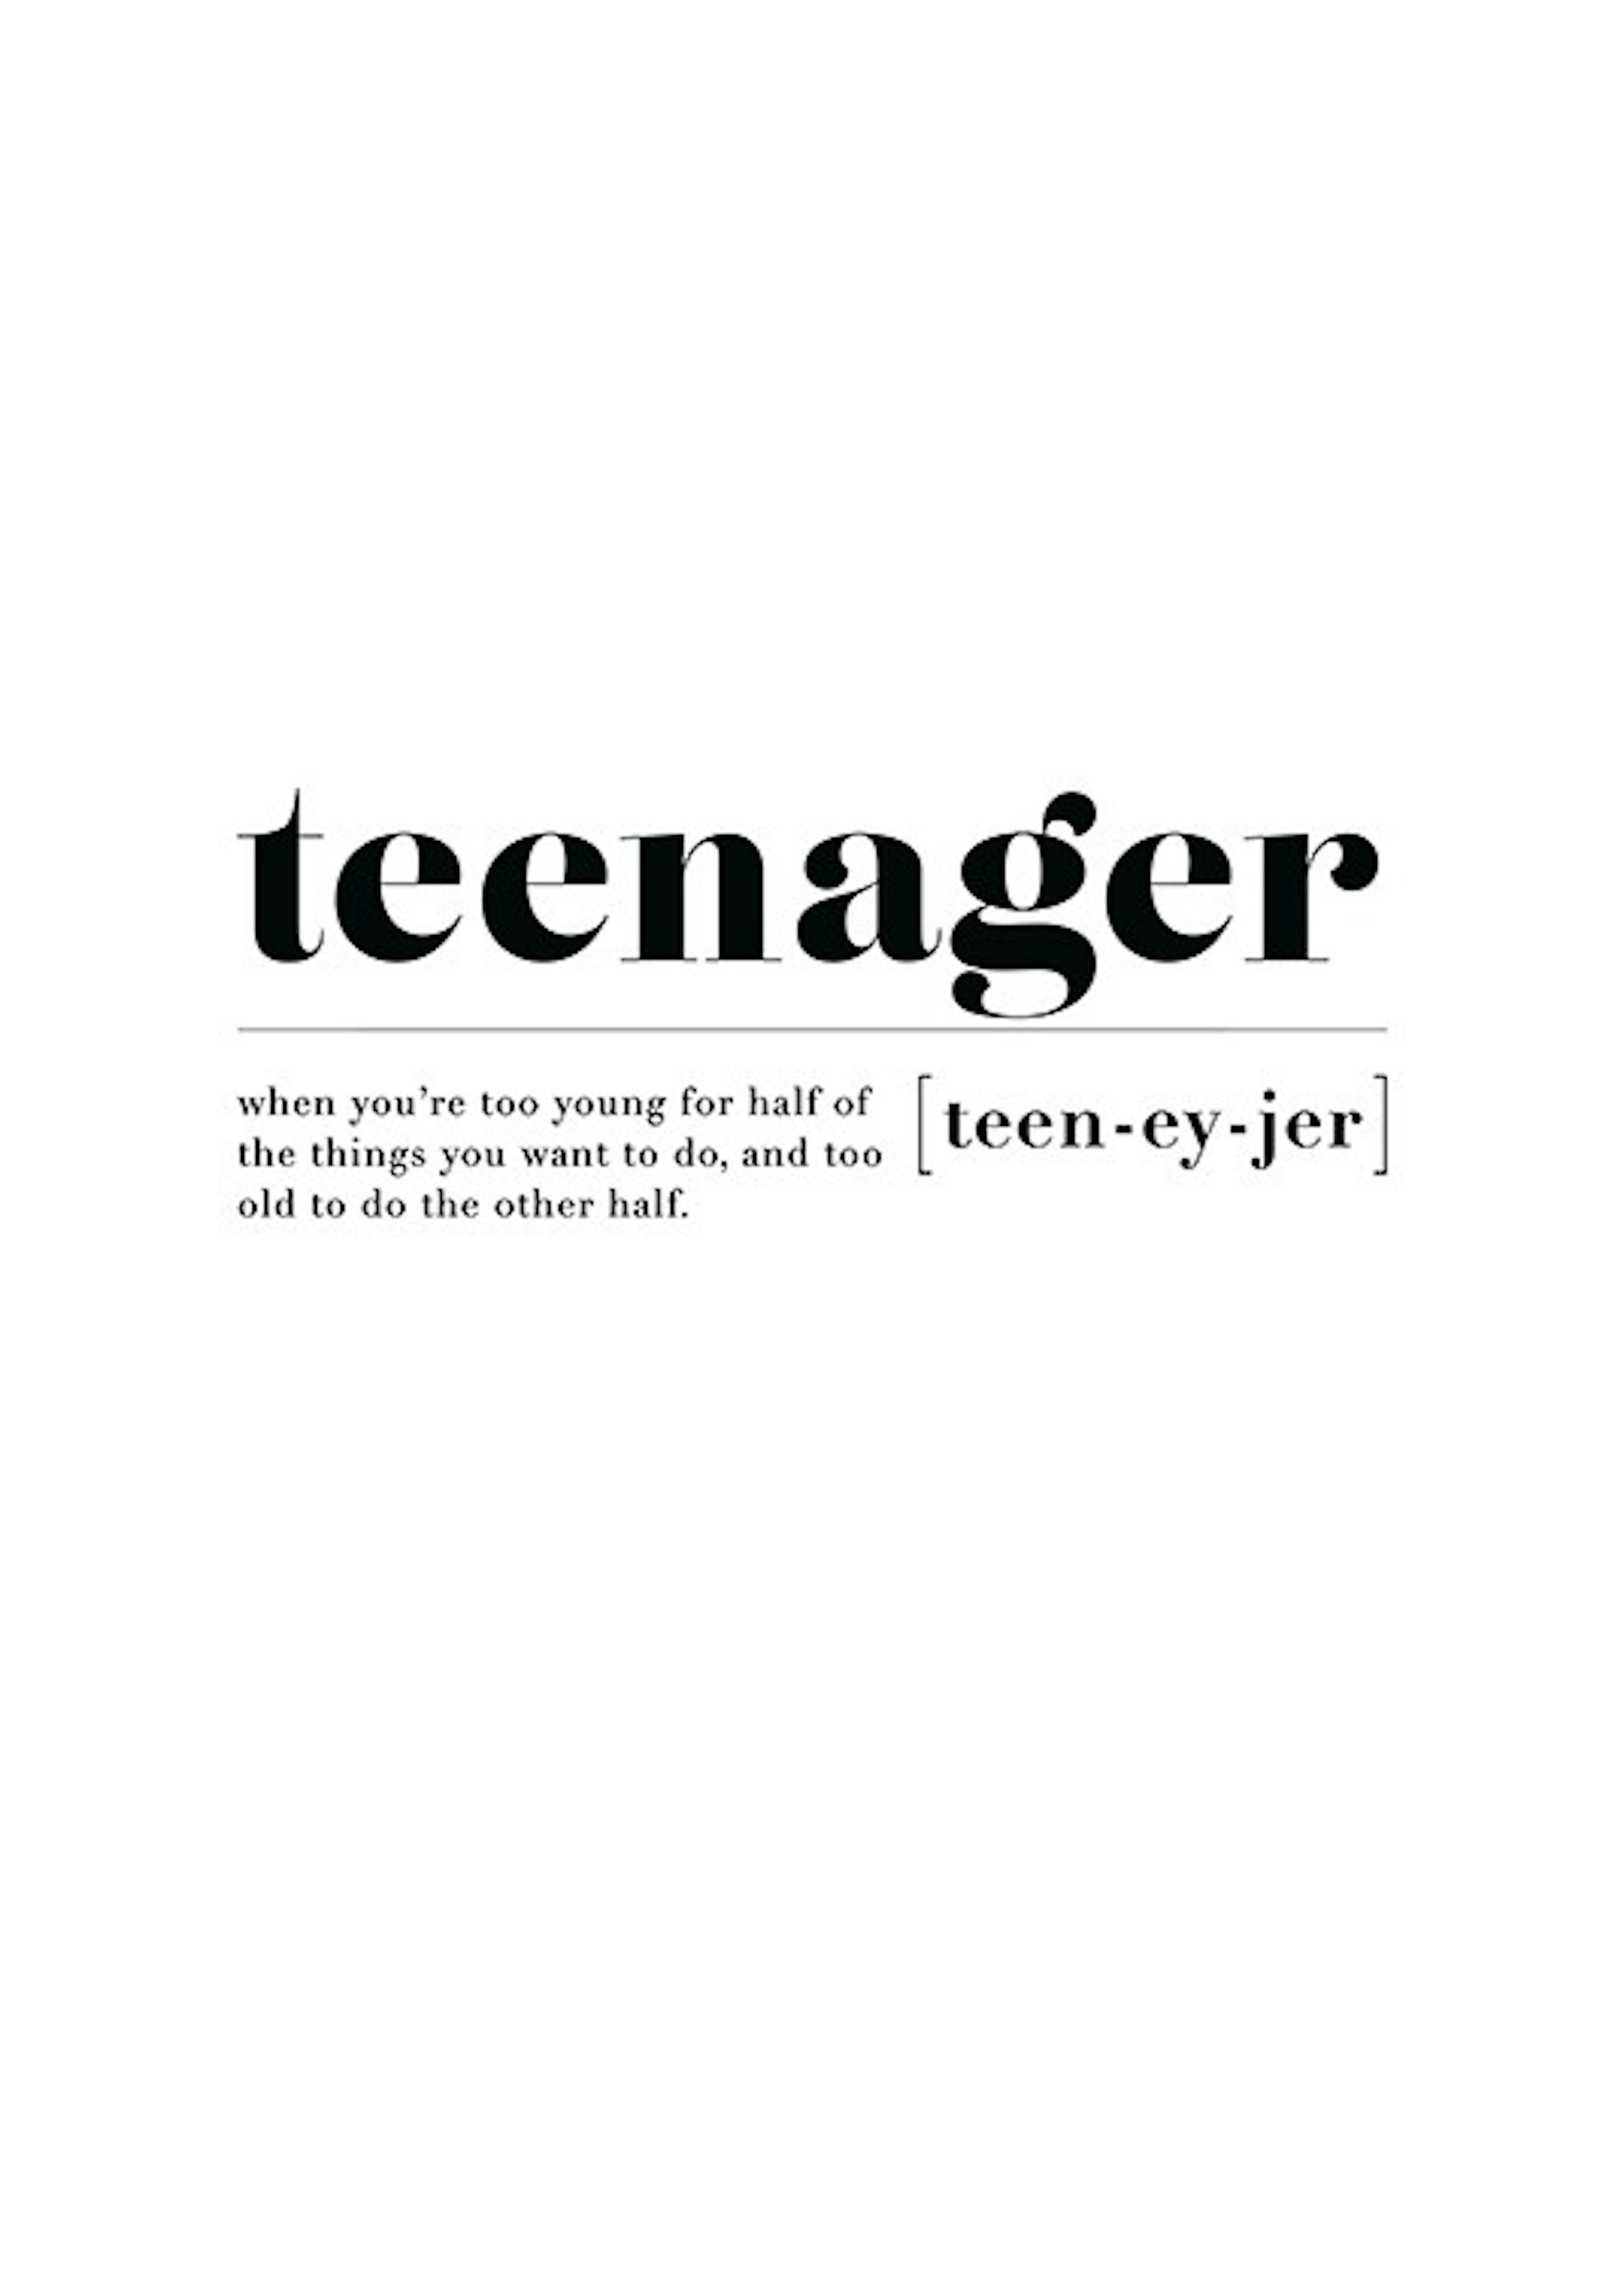 Teenager 포스터 0